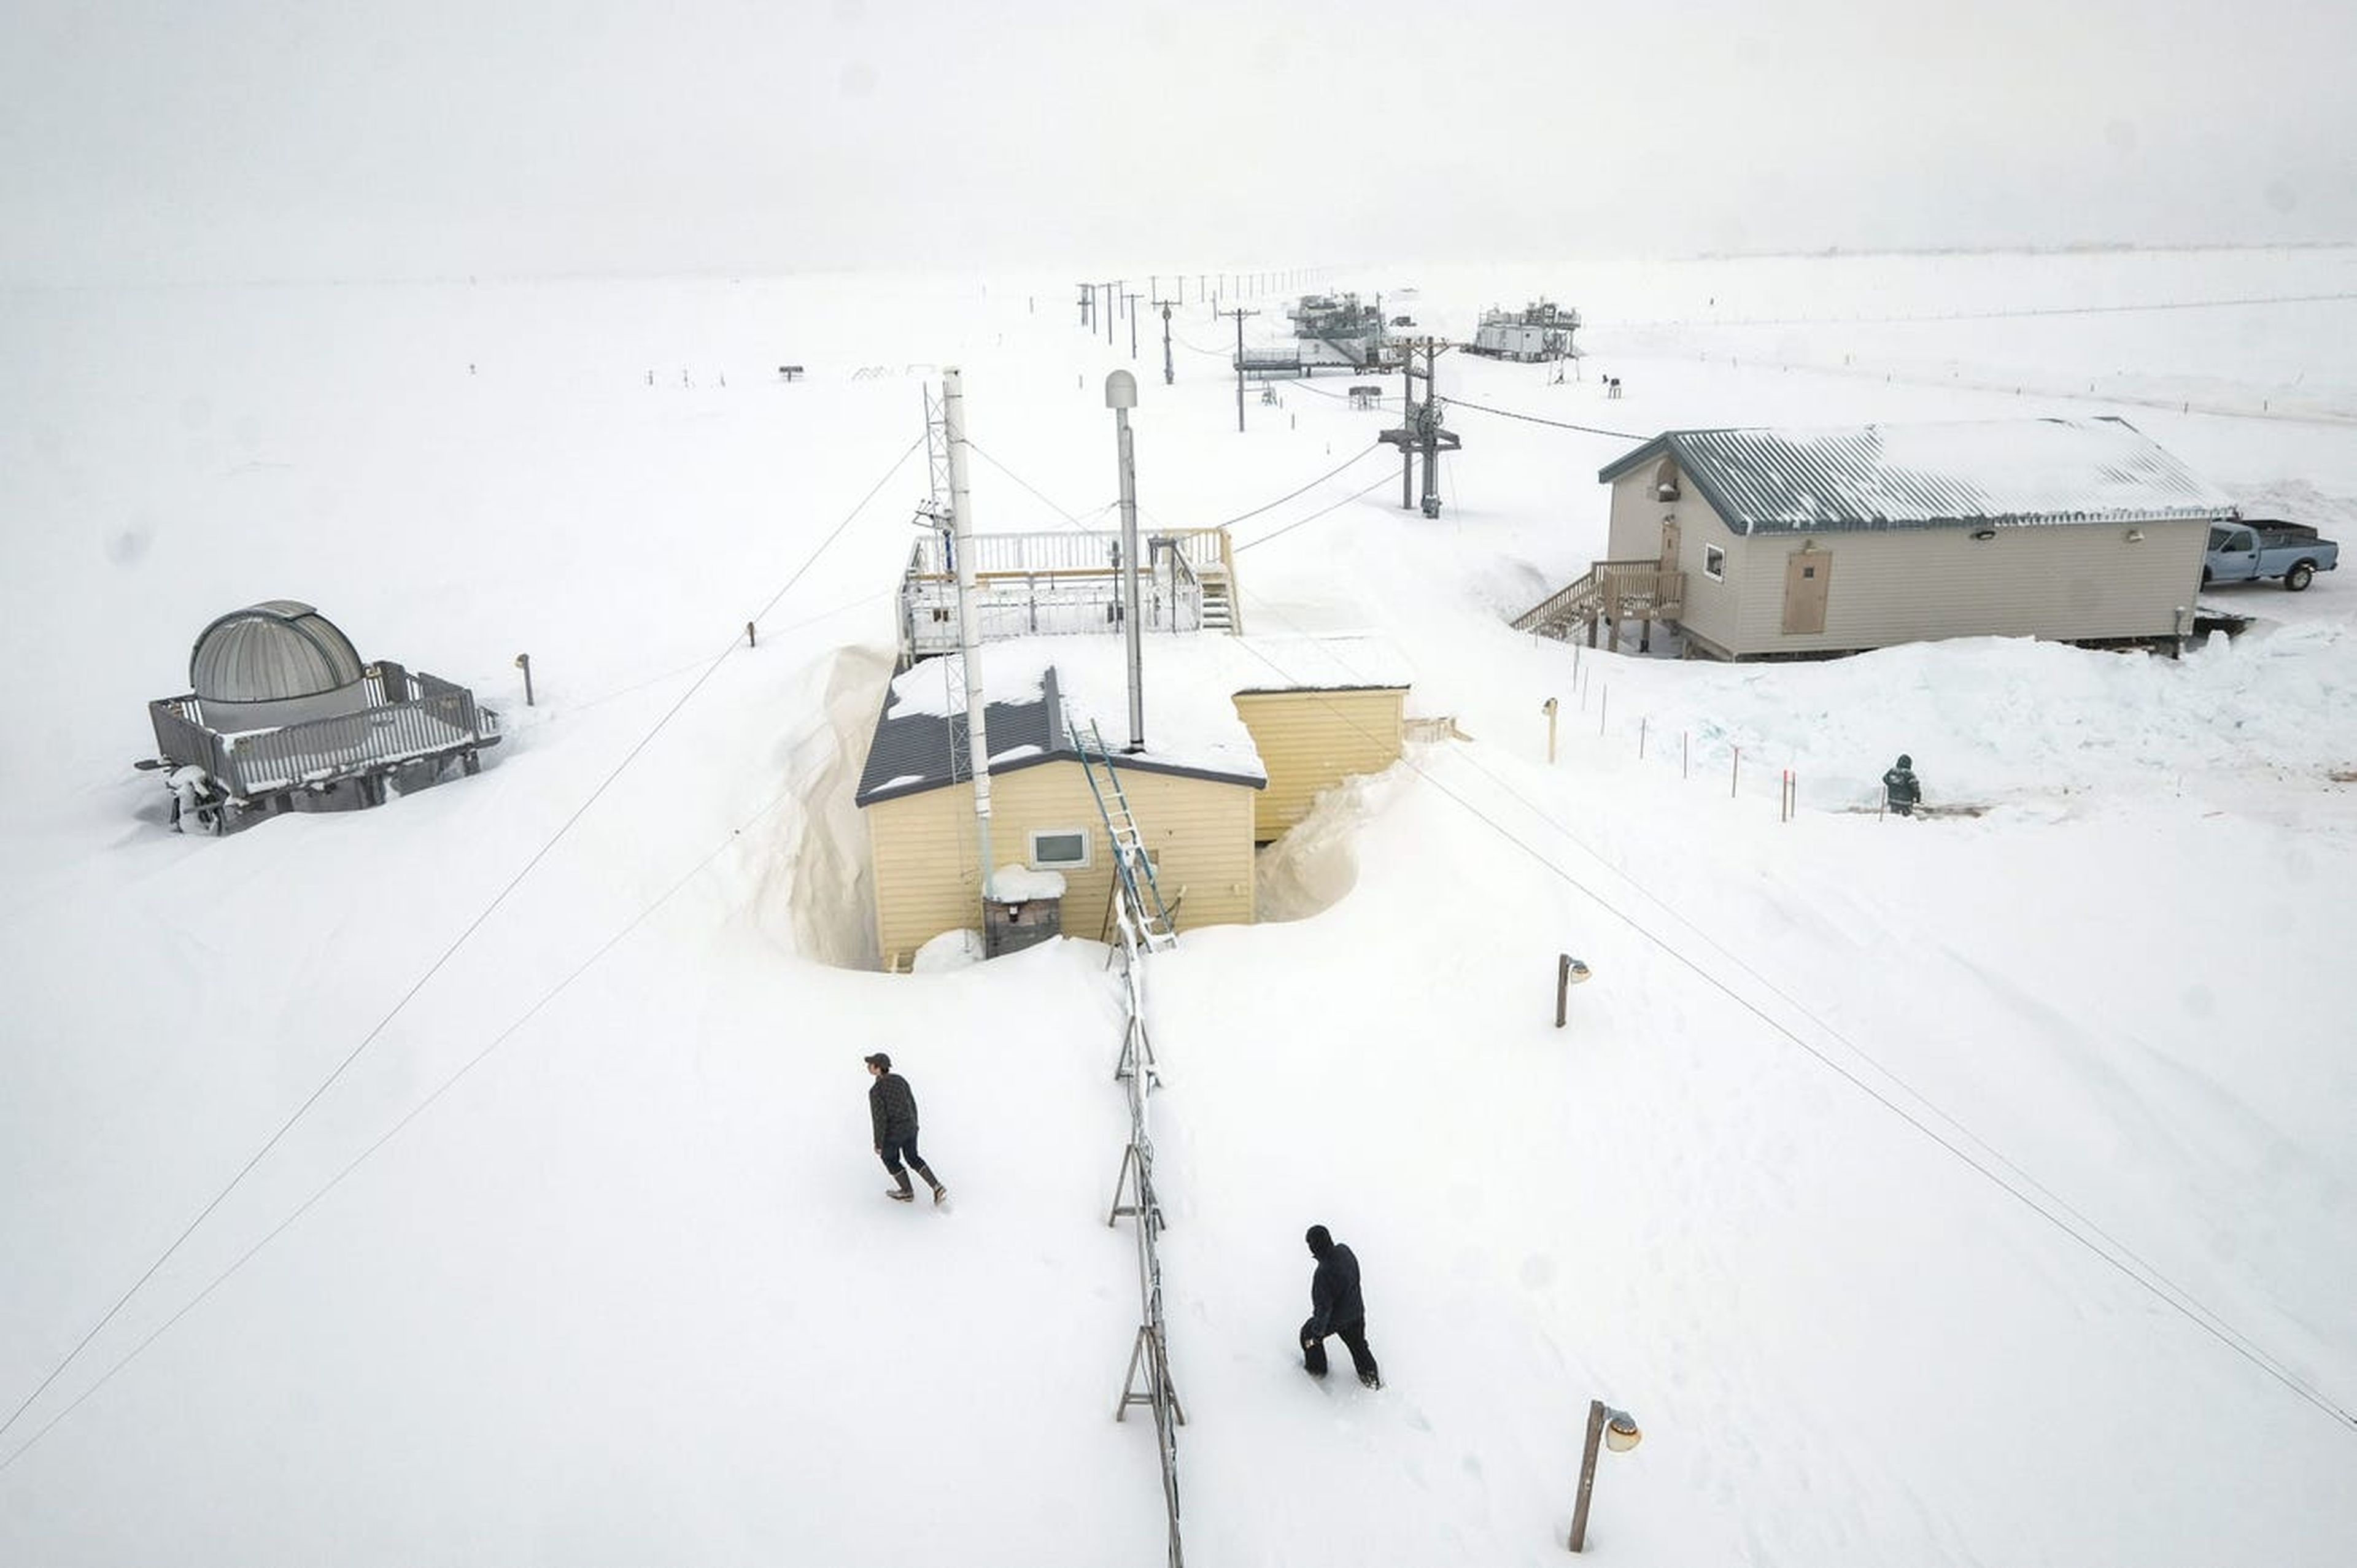 Sin el sol, las temperaturas bajan sustancialmente: Utqiagvik está bajo cero durante 160 días al año.